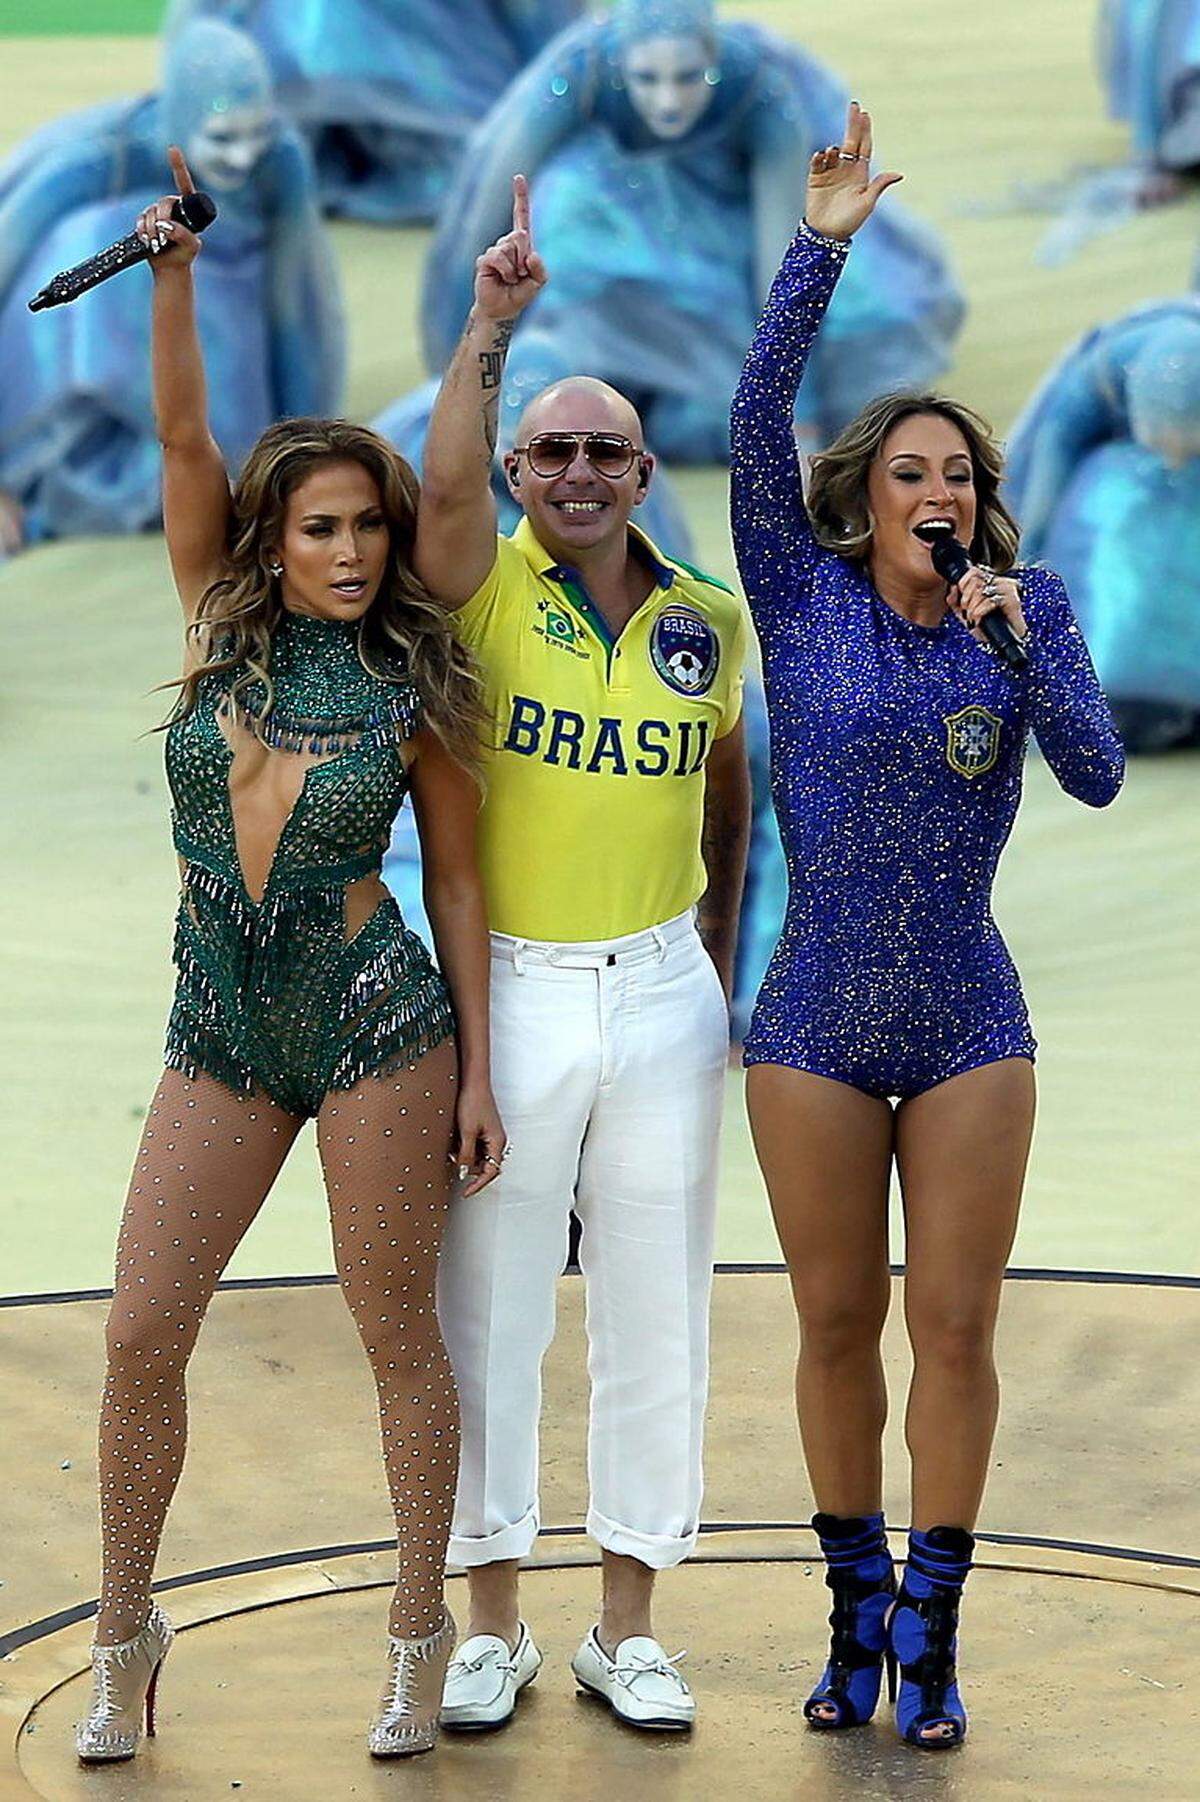 Höhepunkt war der Auftritt von US-Popstar Jennifer Lopez mit Rapper Pitbull und der brasilianischen Sängerin Claudia Leitte, die zum Schluss der 25-minütigen Zeremonie den offiziellen WM-Song "We are one" sangen.